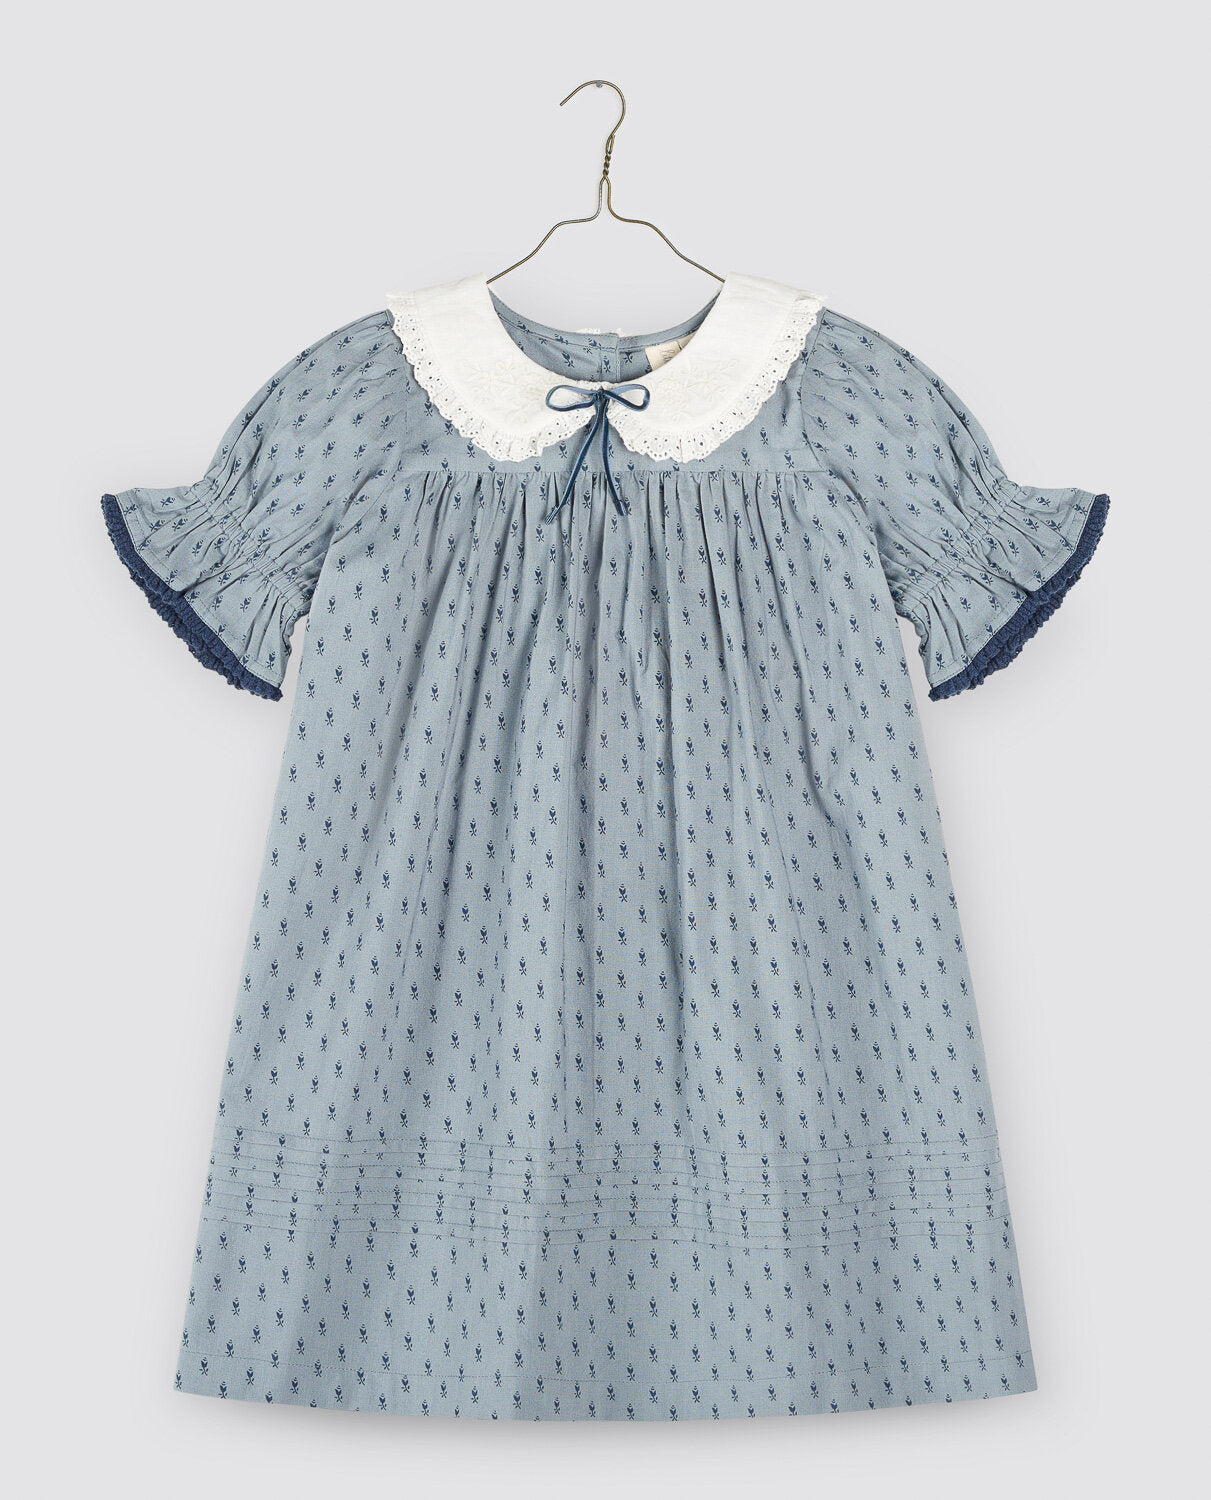 LITTLE COTTON CLOTHES IRIS DRESS / DORSET FLORAL